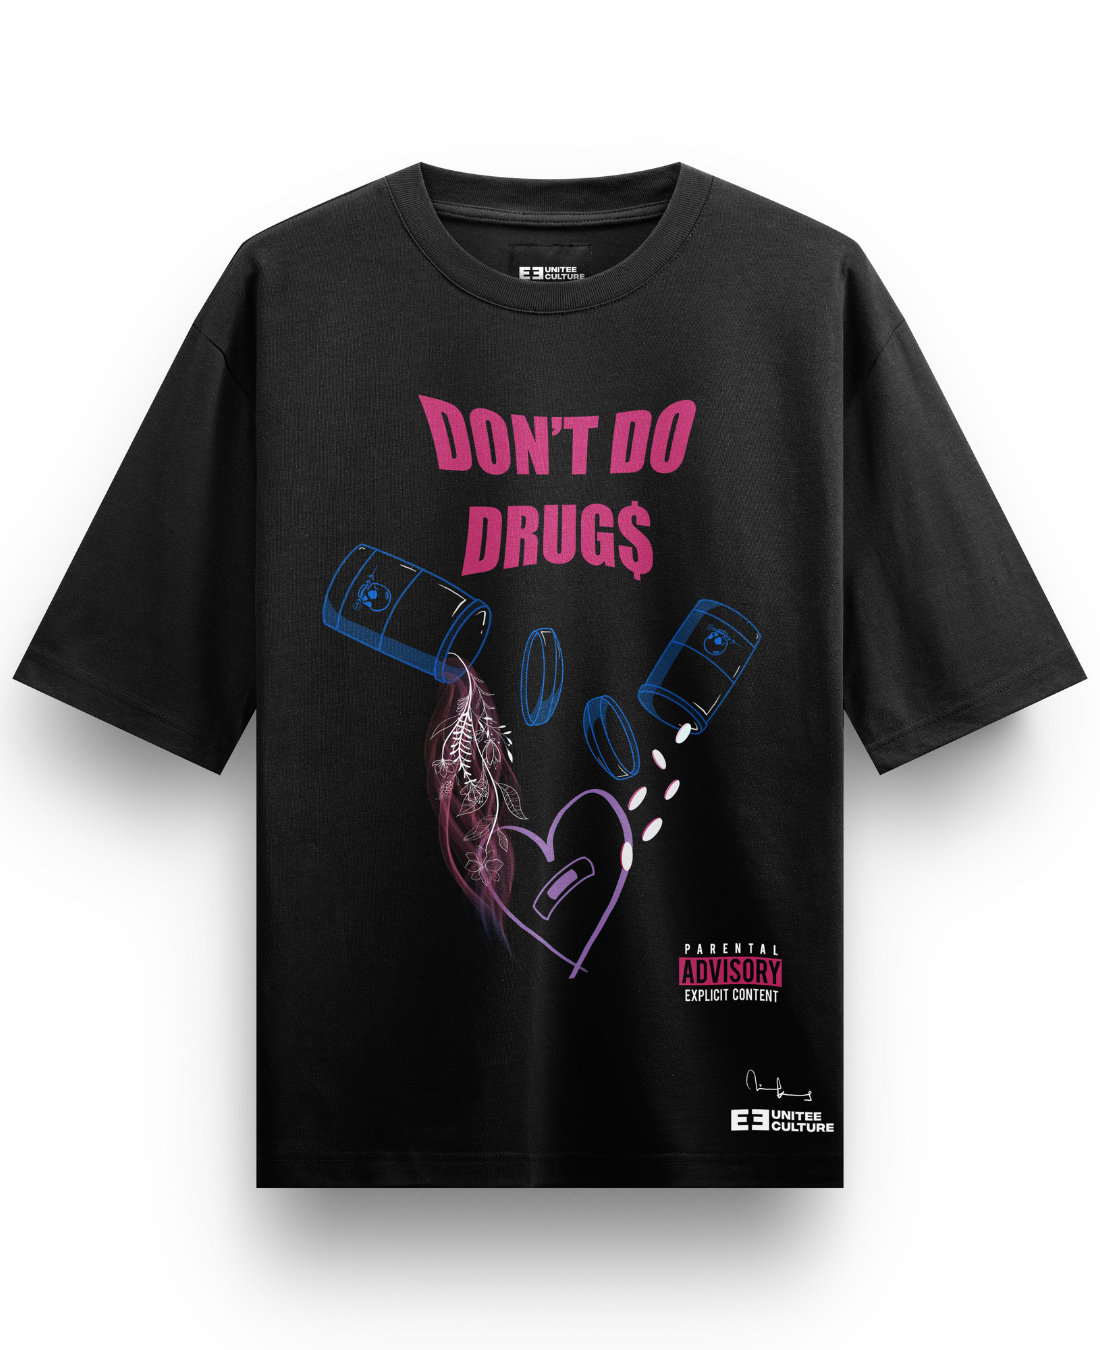 Don’t do drugs